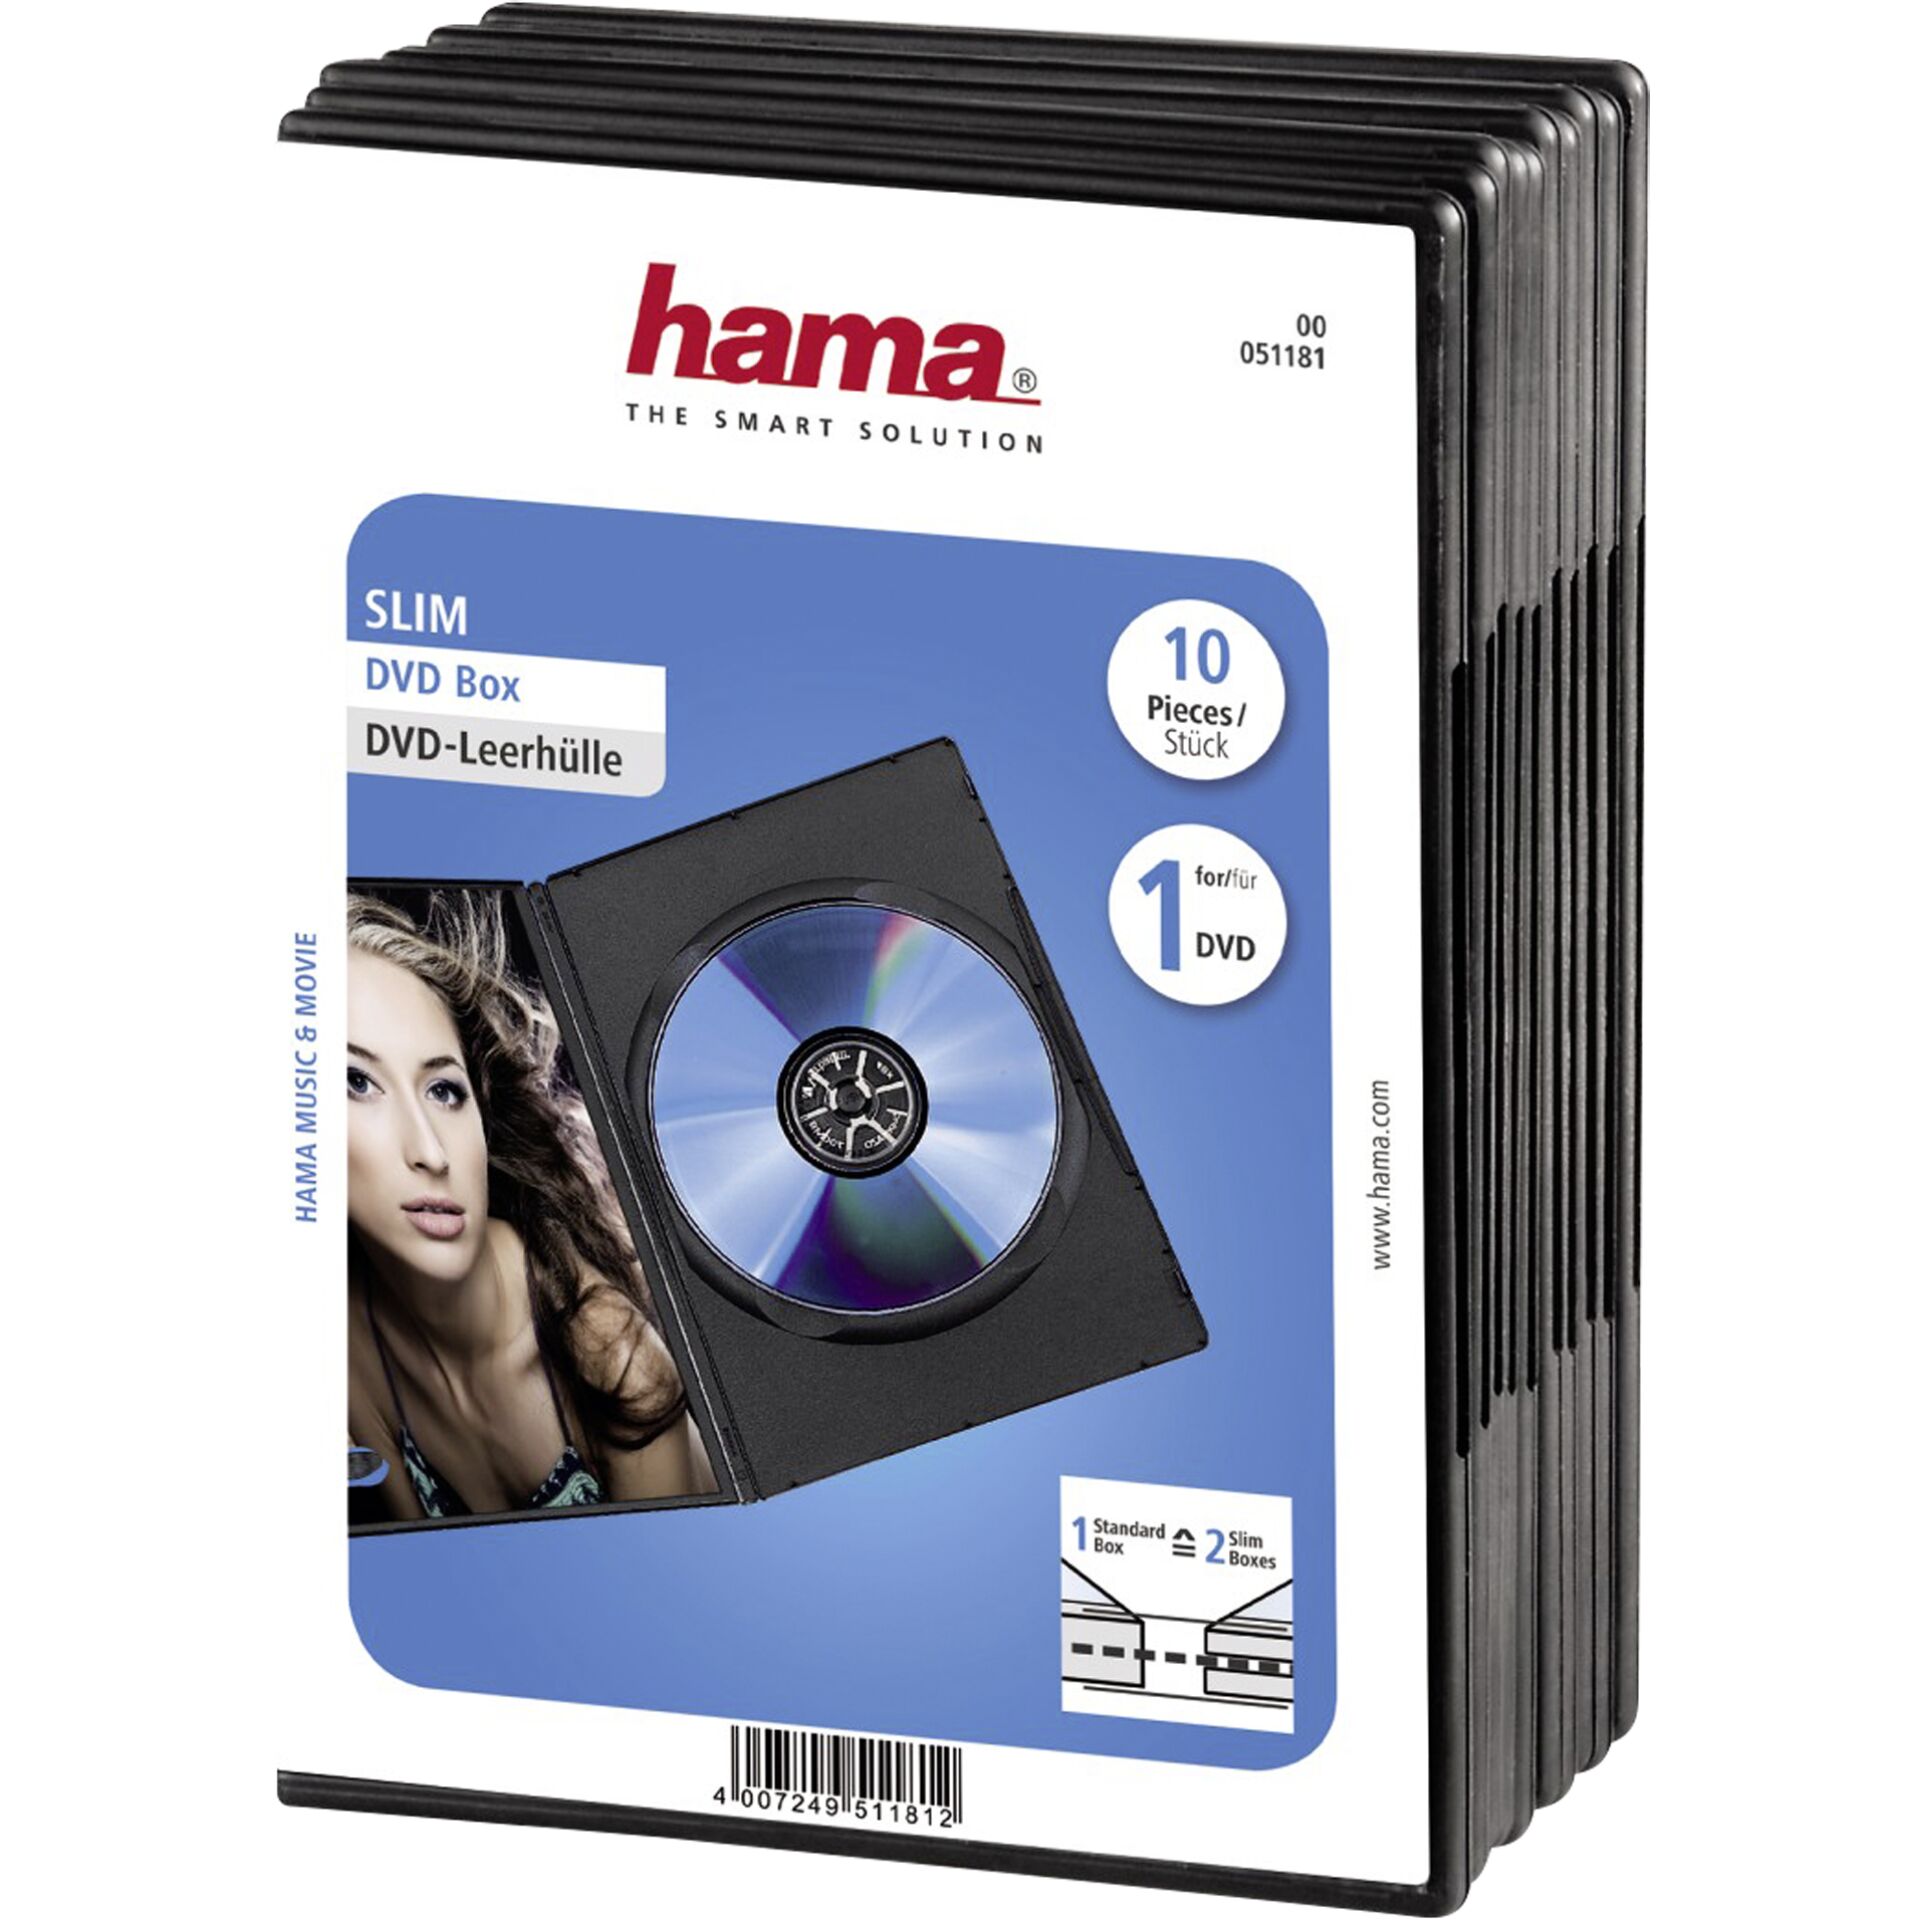 1x10 Hama DVD-Leerhülle Slim 50% Platzersparnis         51181